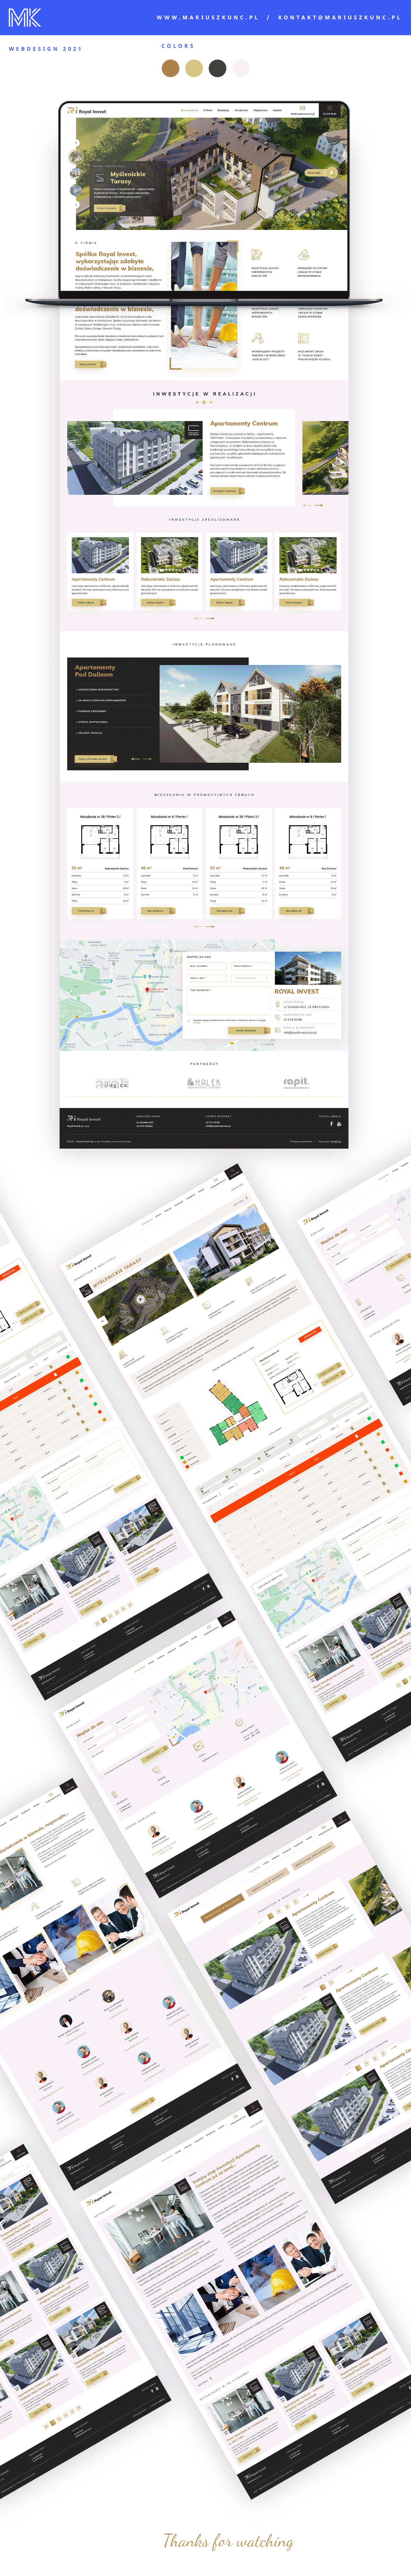 design deweloper estate invest Real realestate UI uidesign Webdesign Website